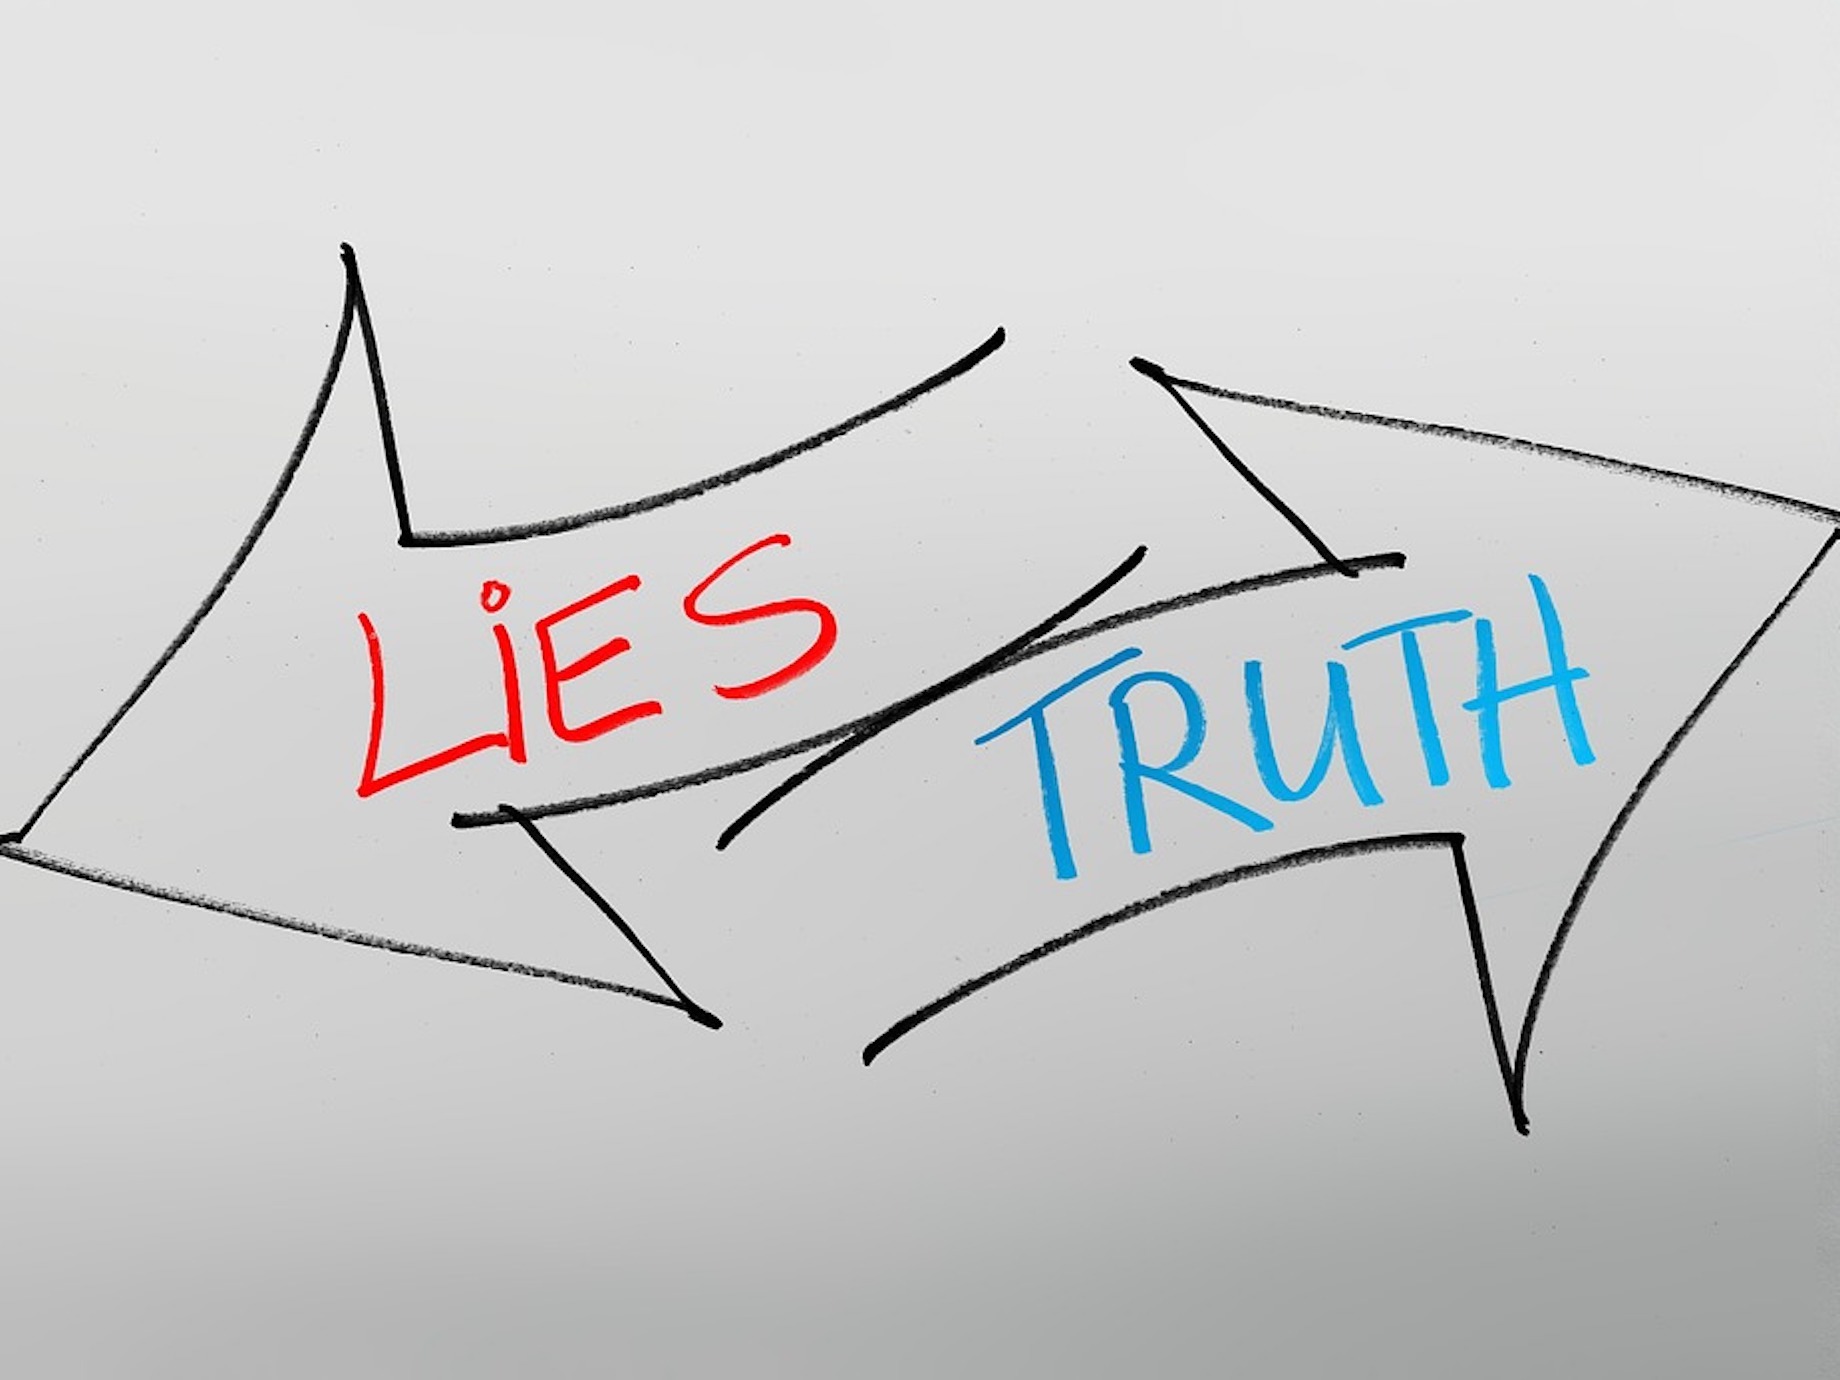 資訊爆炸、真相被操弄！我們該如何從大量資訊中，分辨何為謊言與真相？